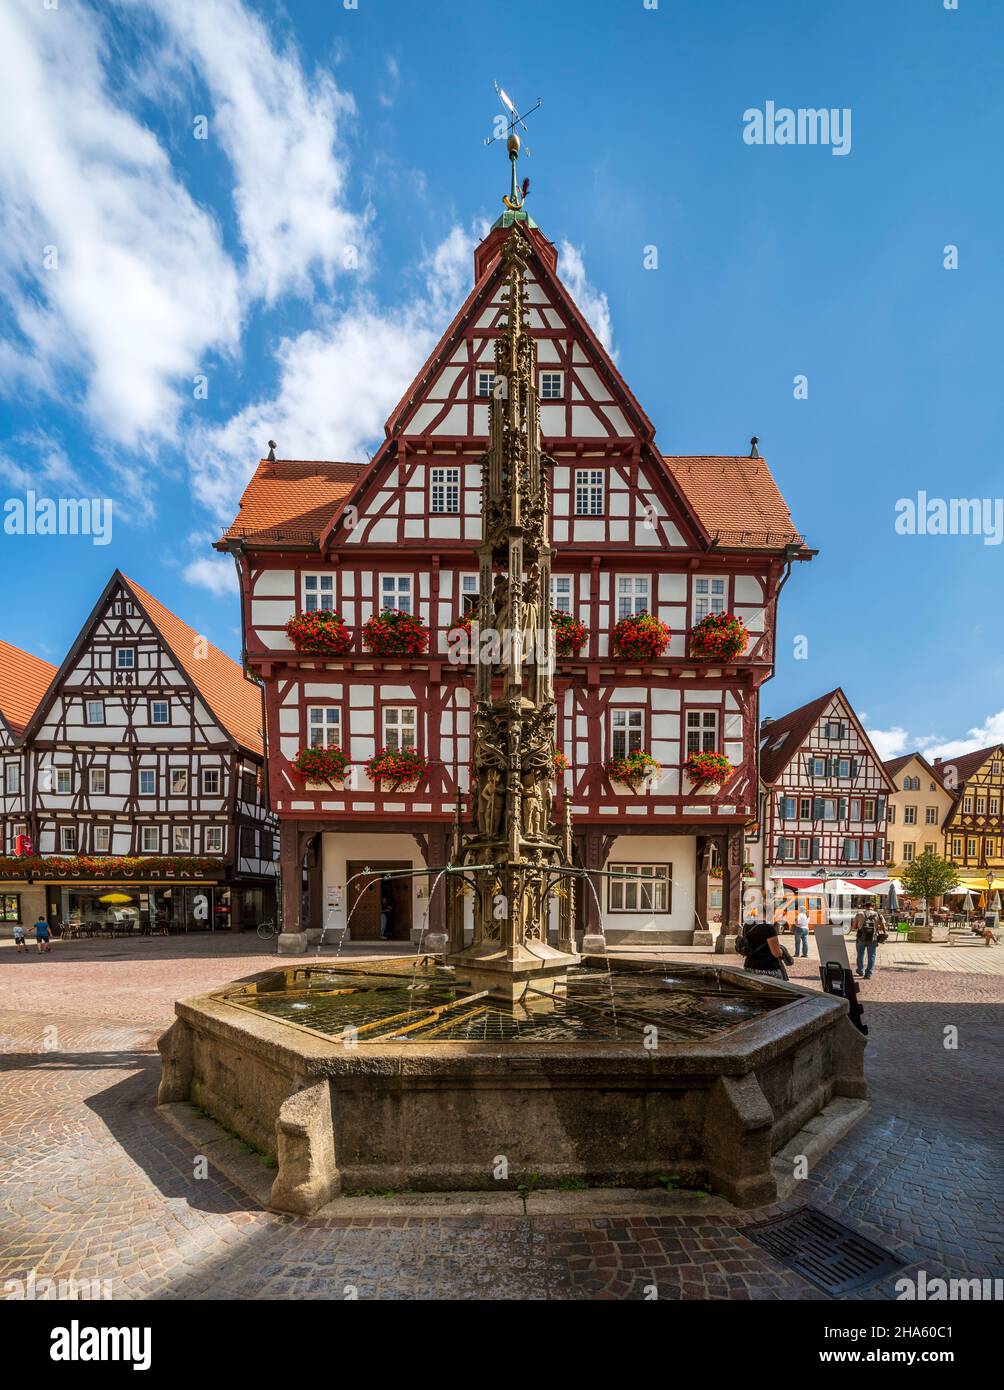 Der Marktbrunnen ist ein laufender Brunnen mit einer fünfstöckigen spätgotischen Brunnensäule, erstellt um 1500, Kopie von 1904/05, Bad urach, baden-württemberg, deutschland Stockfoto